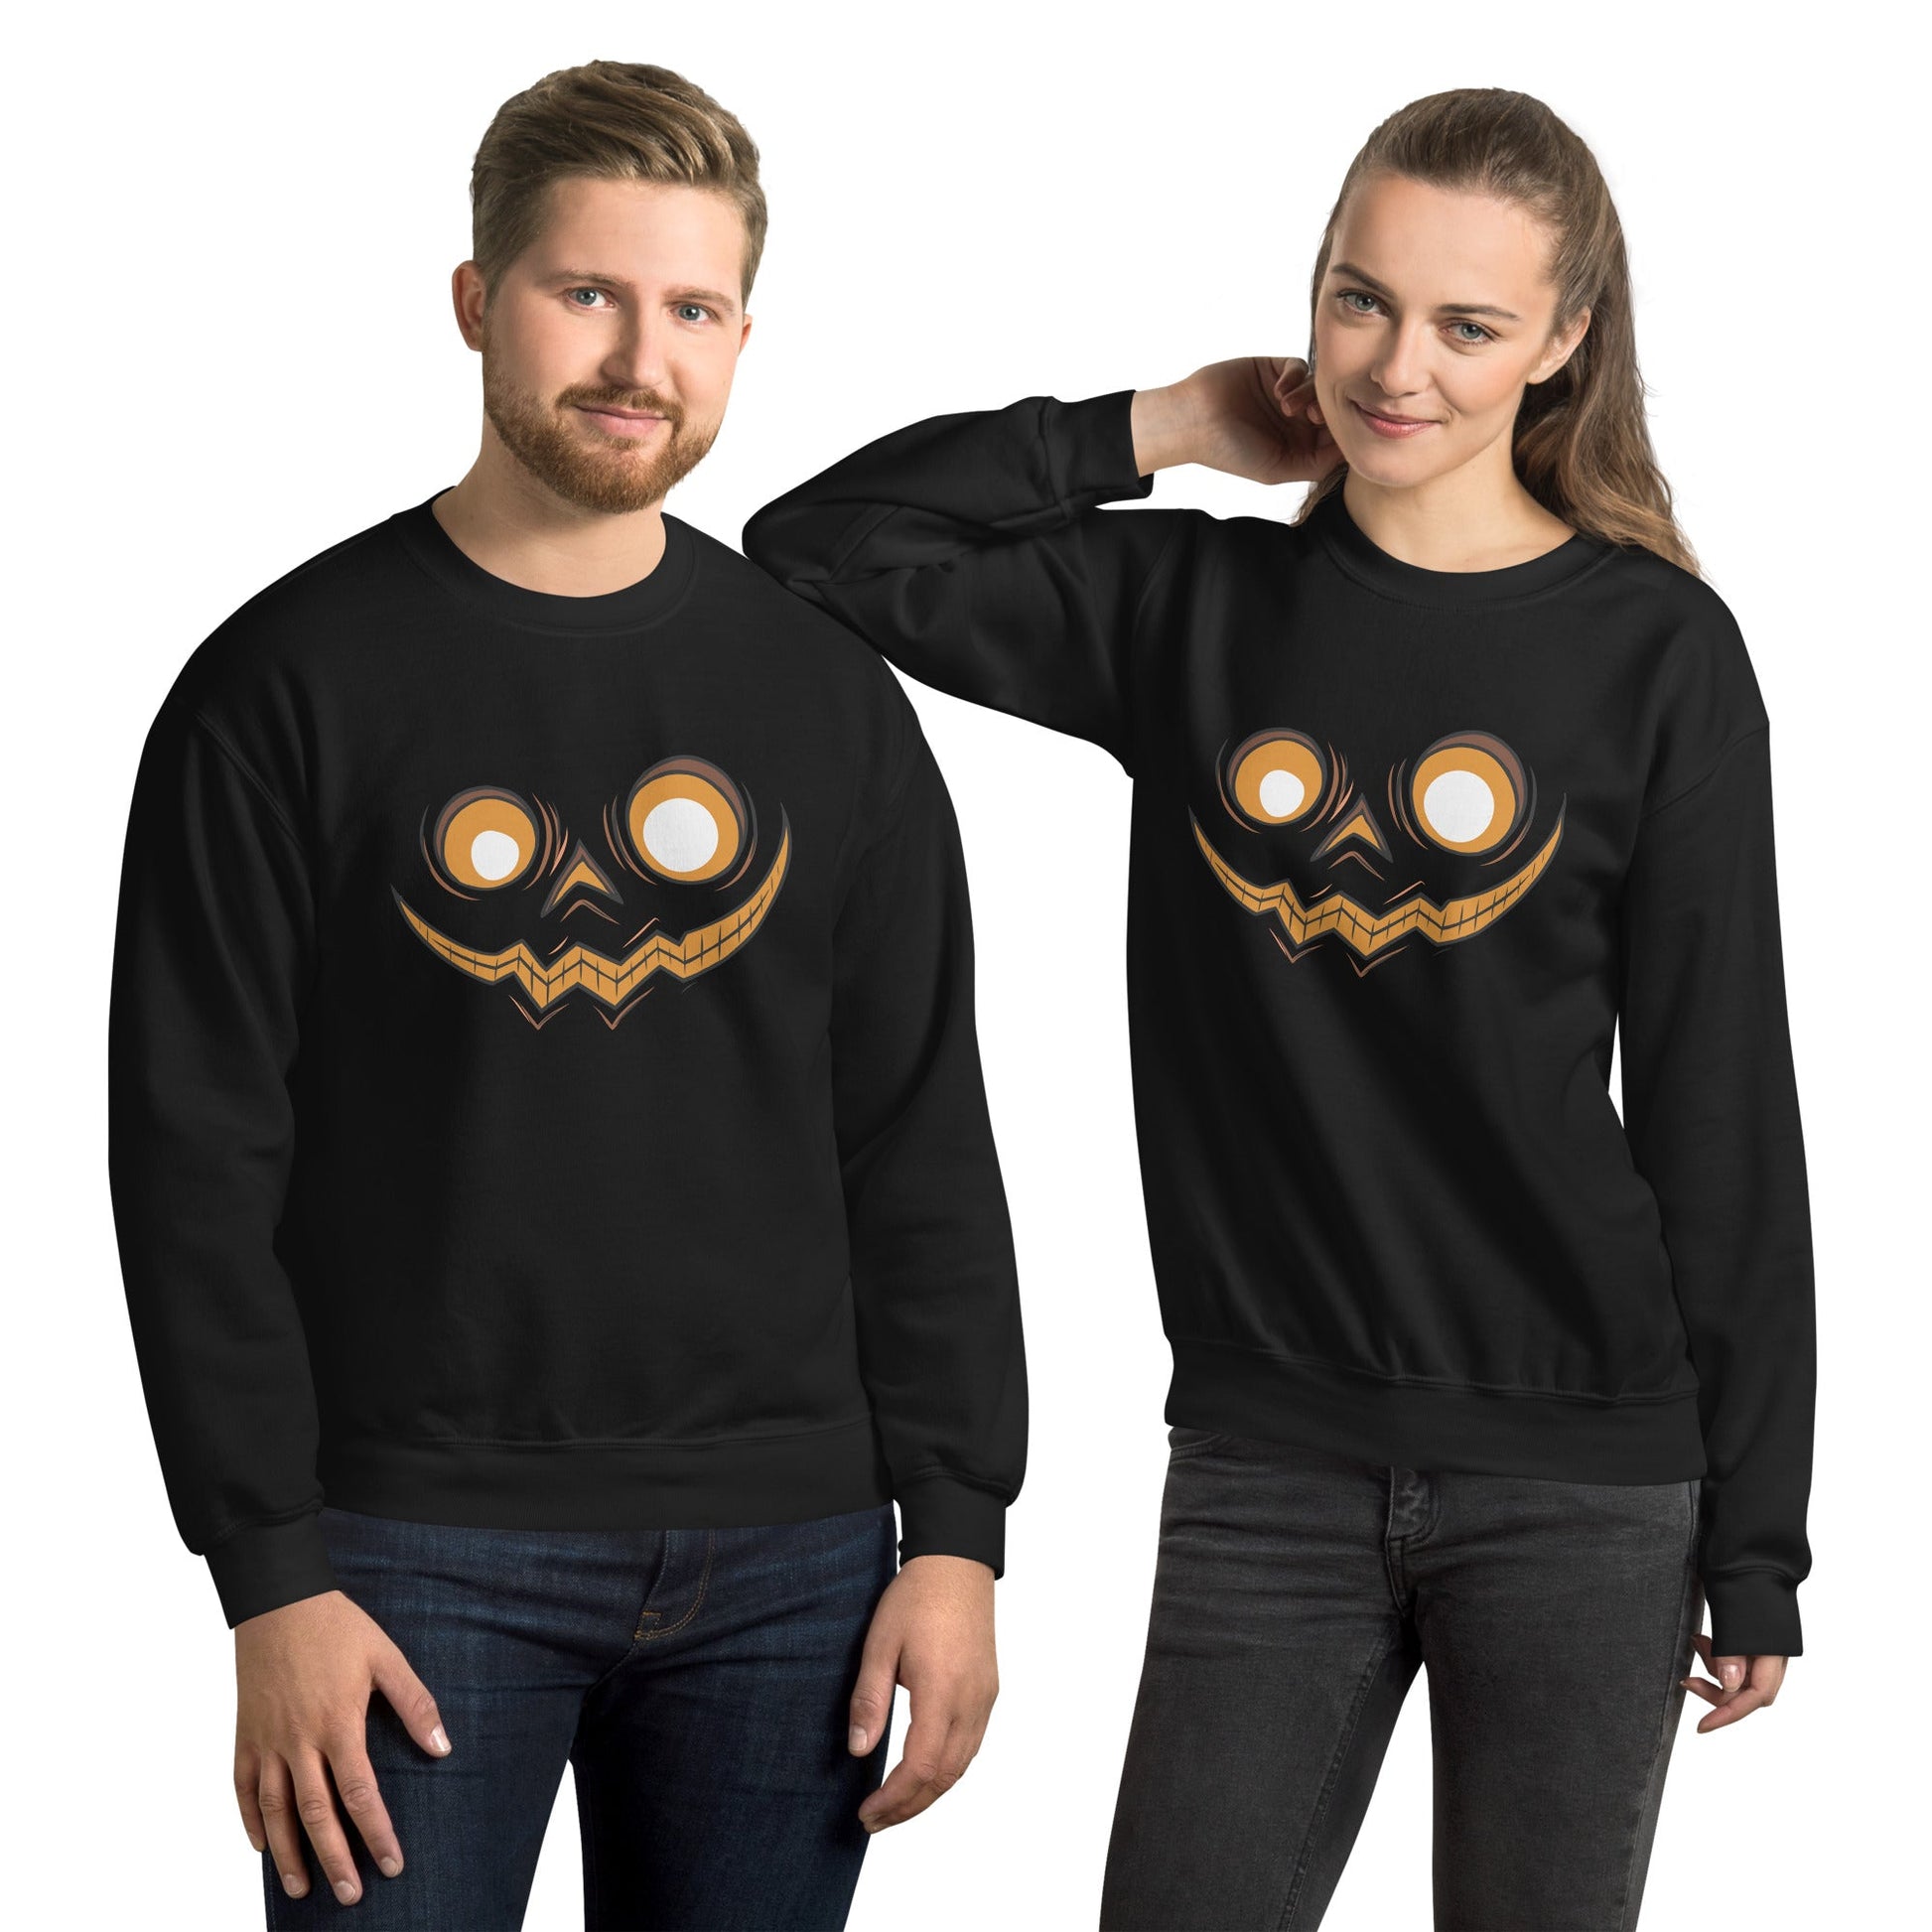 Creepy Ville - Kürbis Gesicht – Premium Unisex Sweatshirt